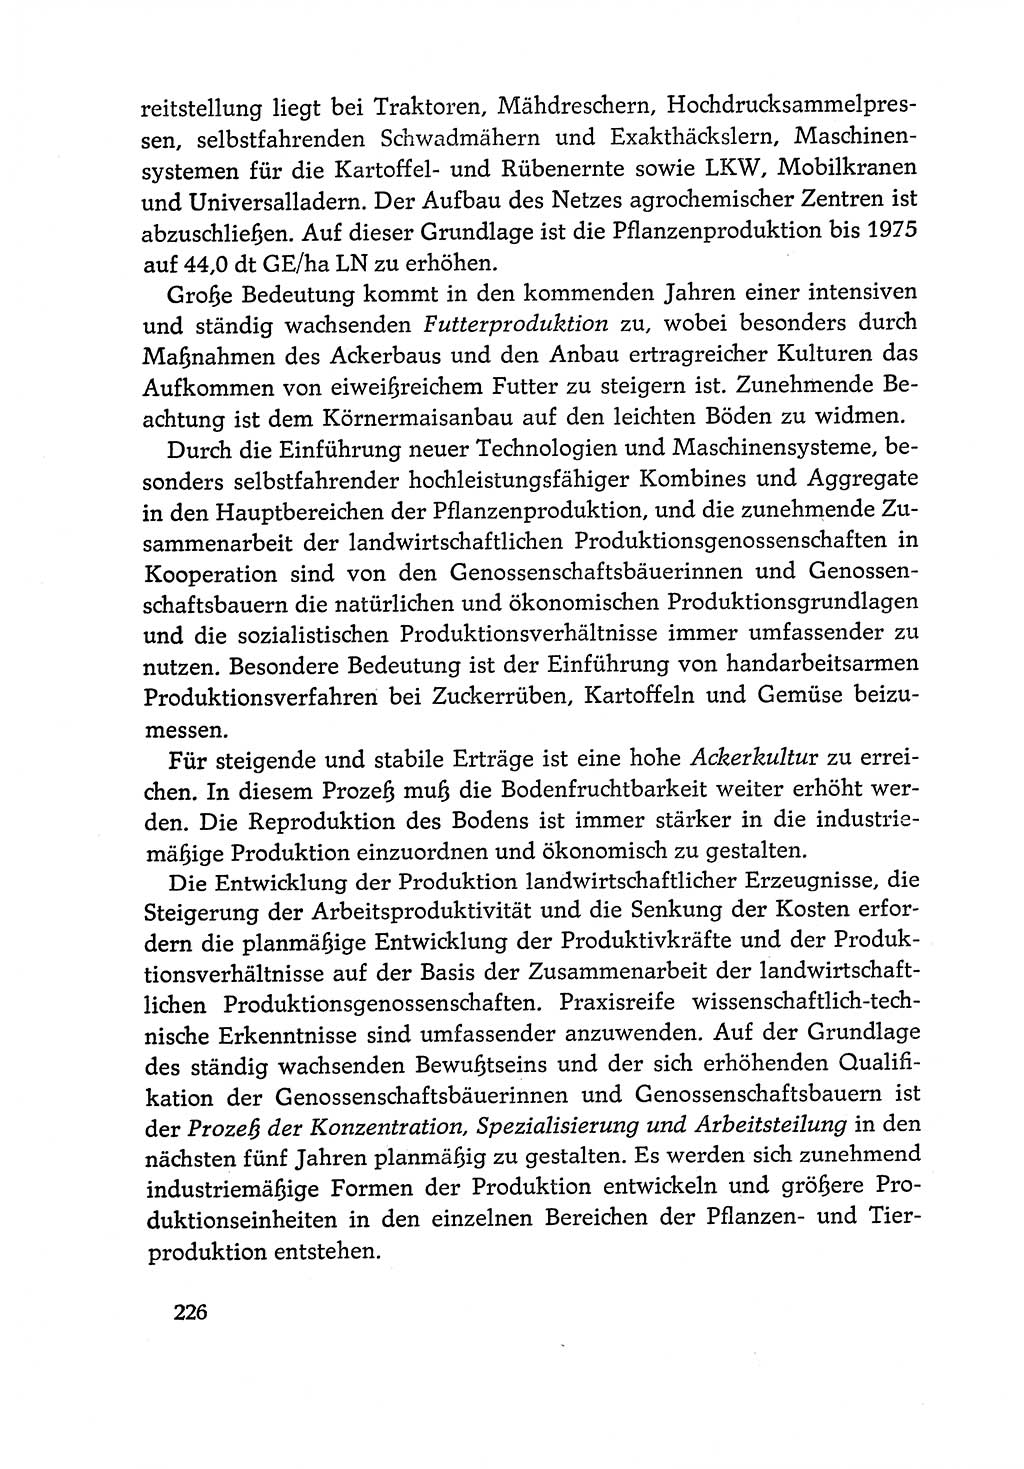 Dokumente der Sozialistischen Einheitspartei Deutschlands (SED) [Deutsche Demokratische Republik (DDR)] 1970-1971, Seite 226 (Dok. SED DDR 1970-1971, S. 226)